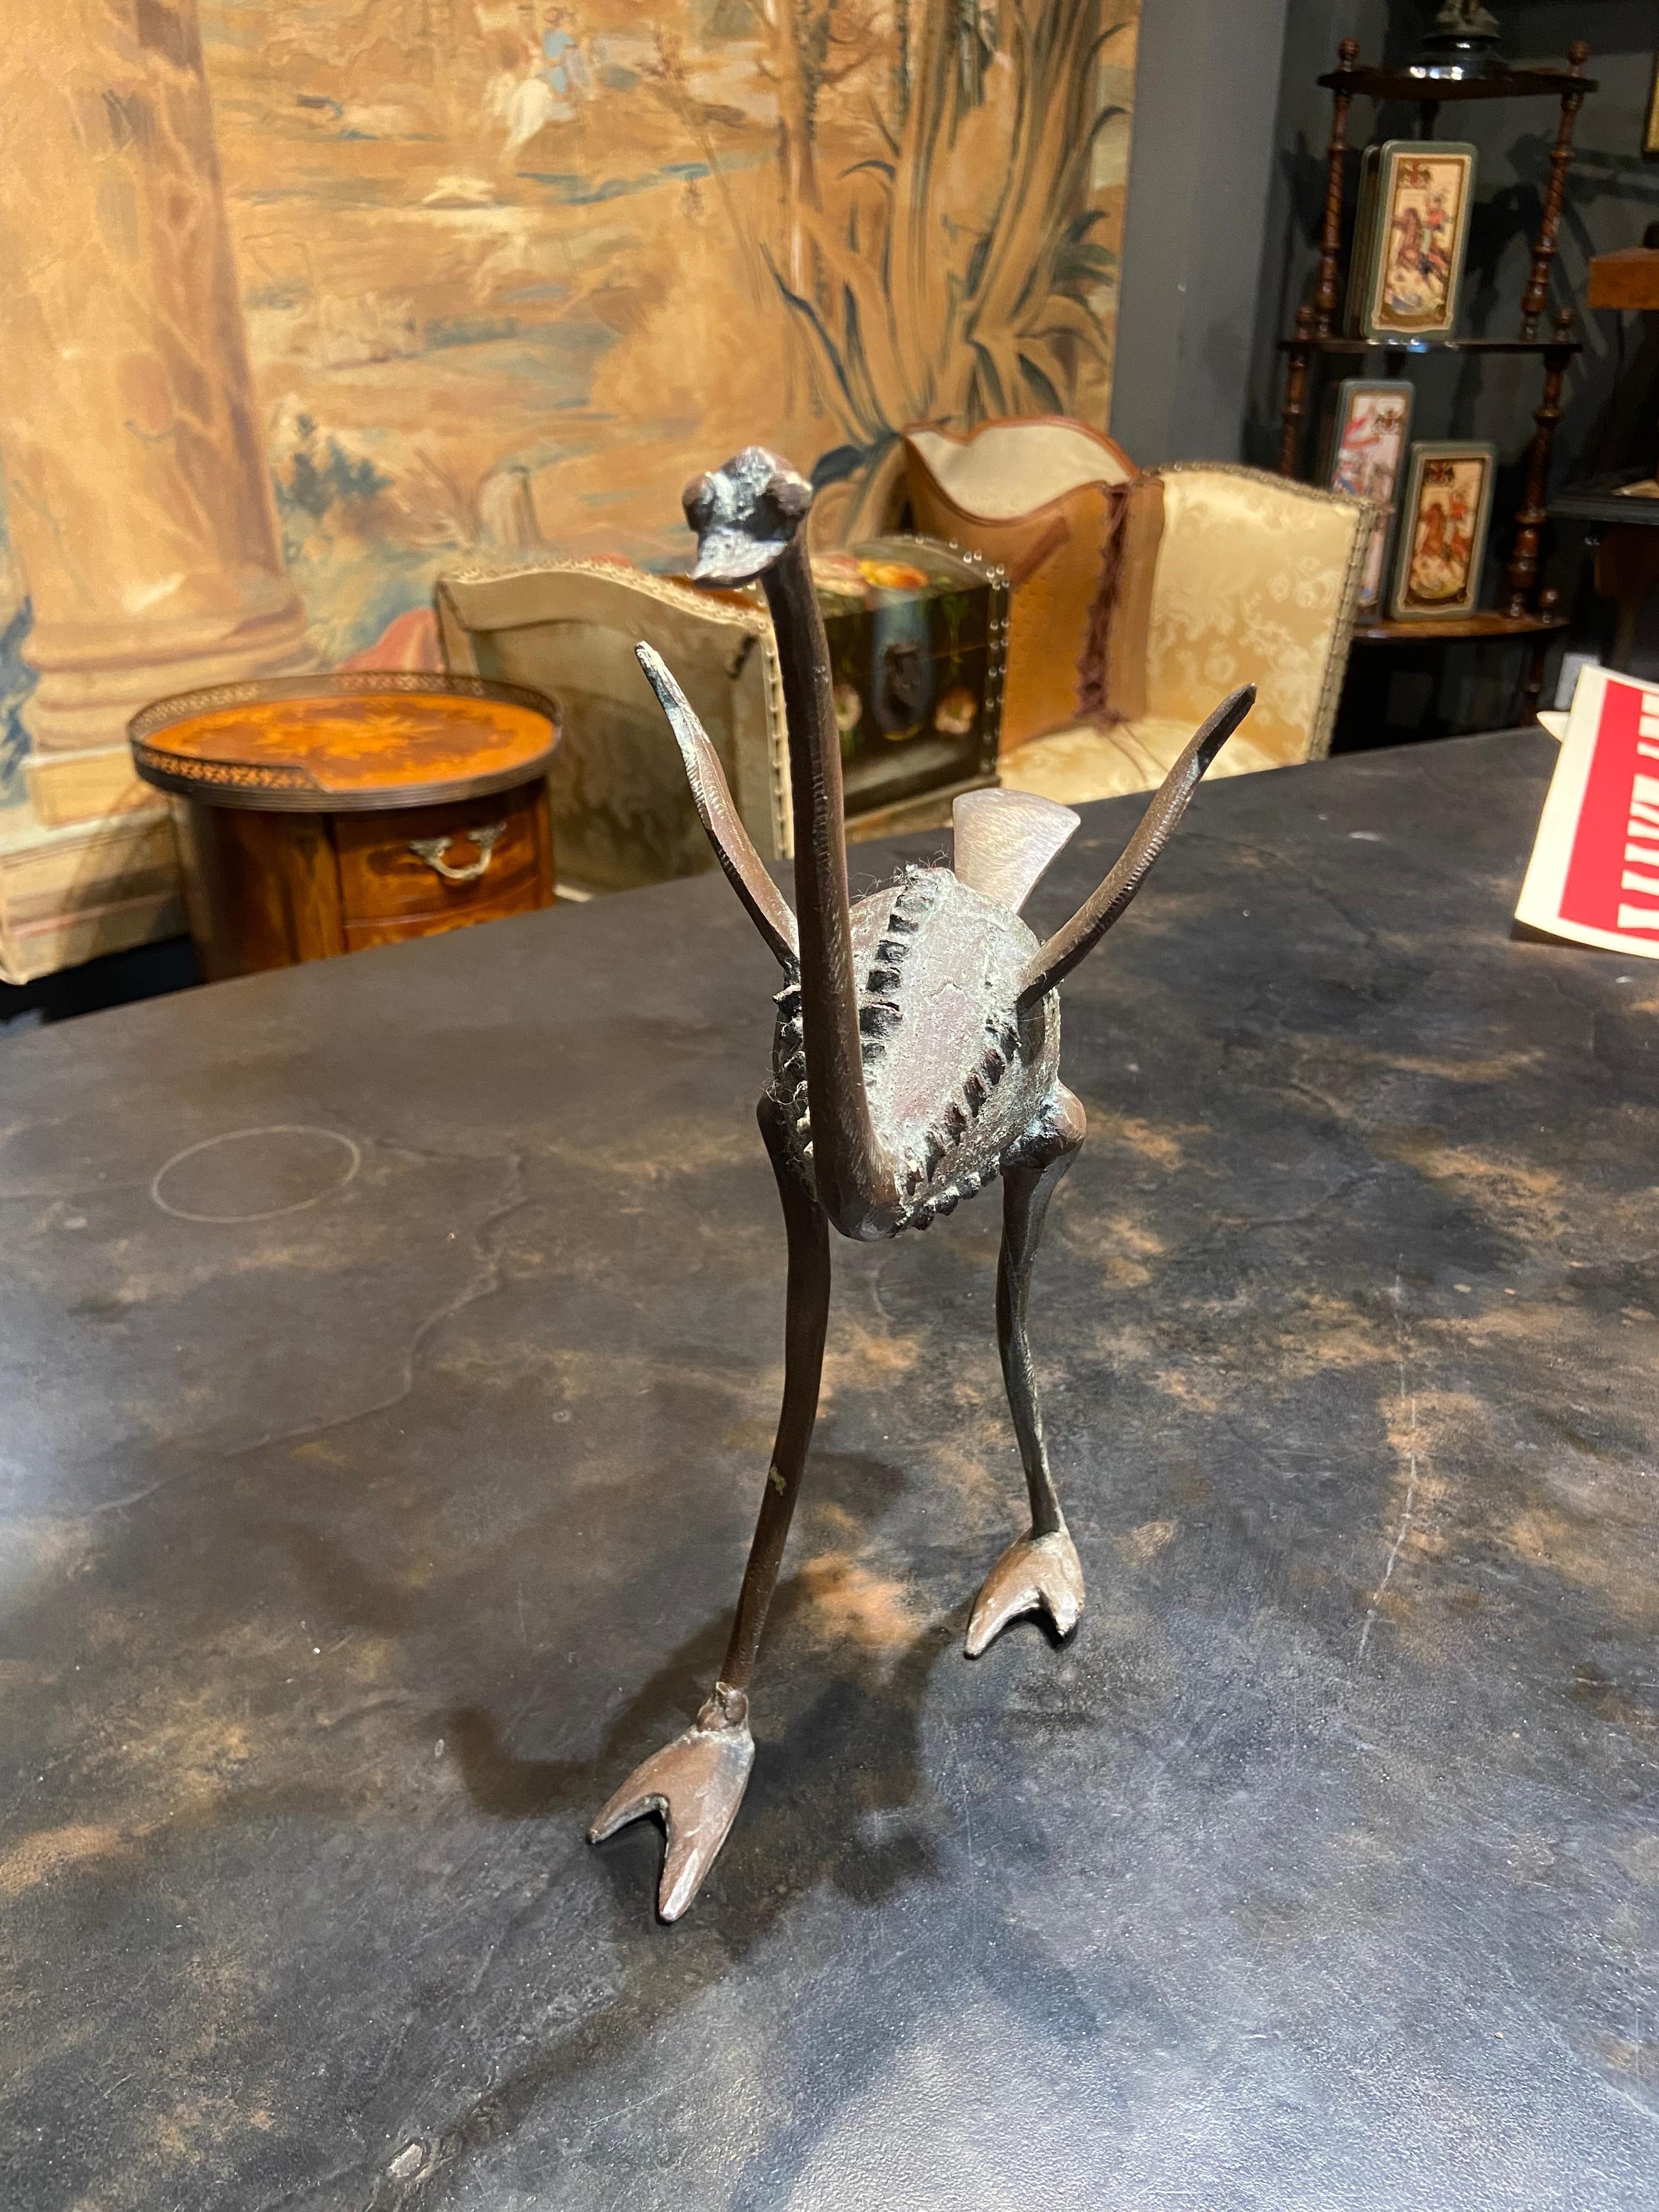 Figure en bronze français d'une autruche marchant avec les ailes déployées. 
Les yeux et les pieds sont assez grands et drôles d'une manière agréable.
L'oiseau donne une impression positive.
France, artiste inconnu. 